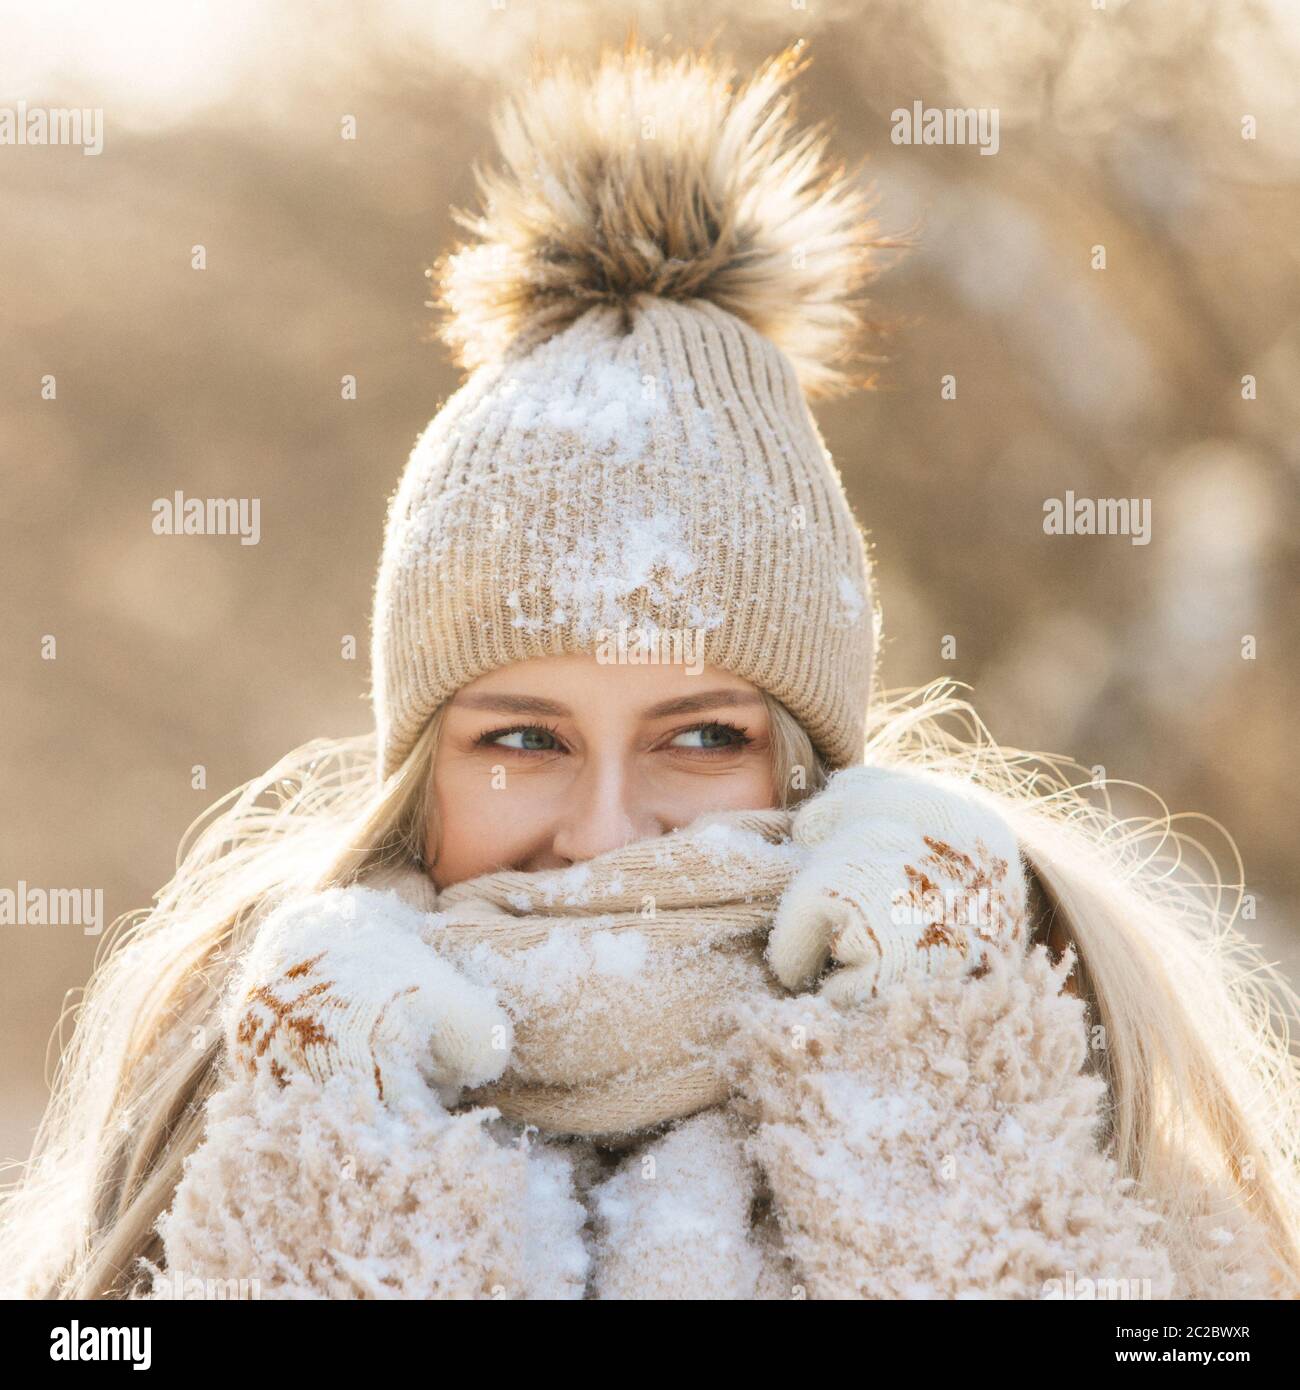 Gants bonnet hiver Banque de photographies et d'images à haute résolution -  Alamy